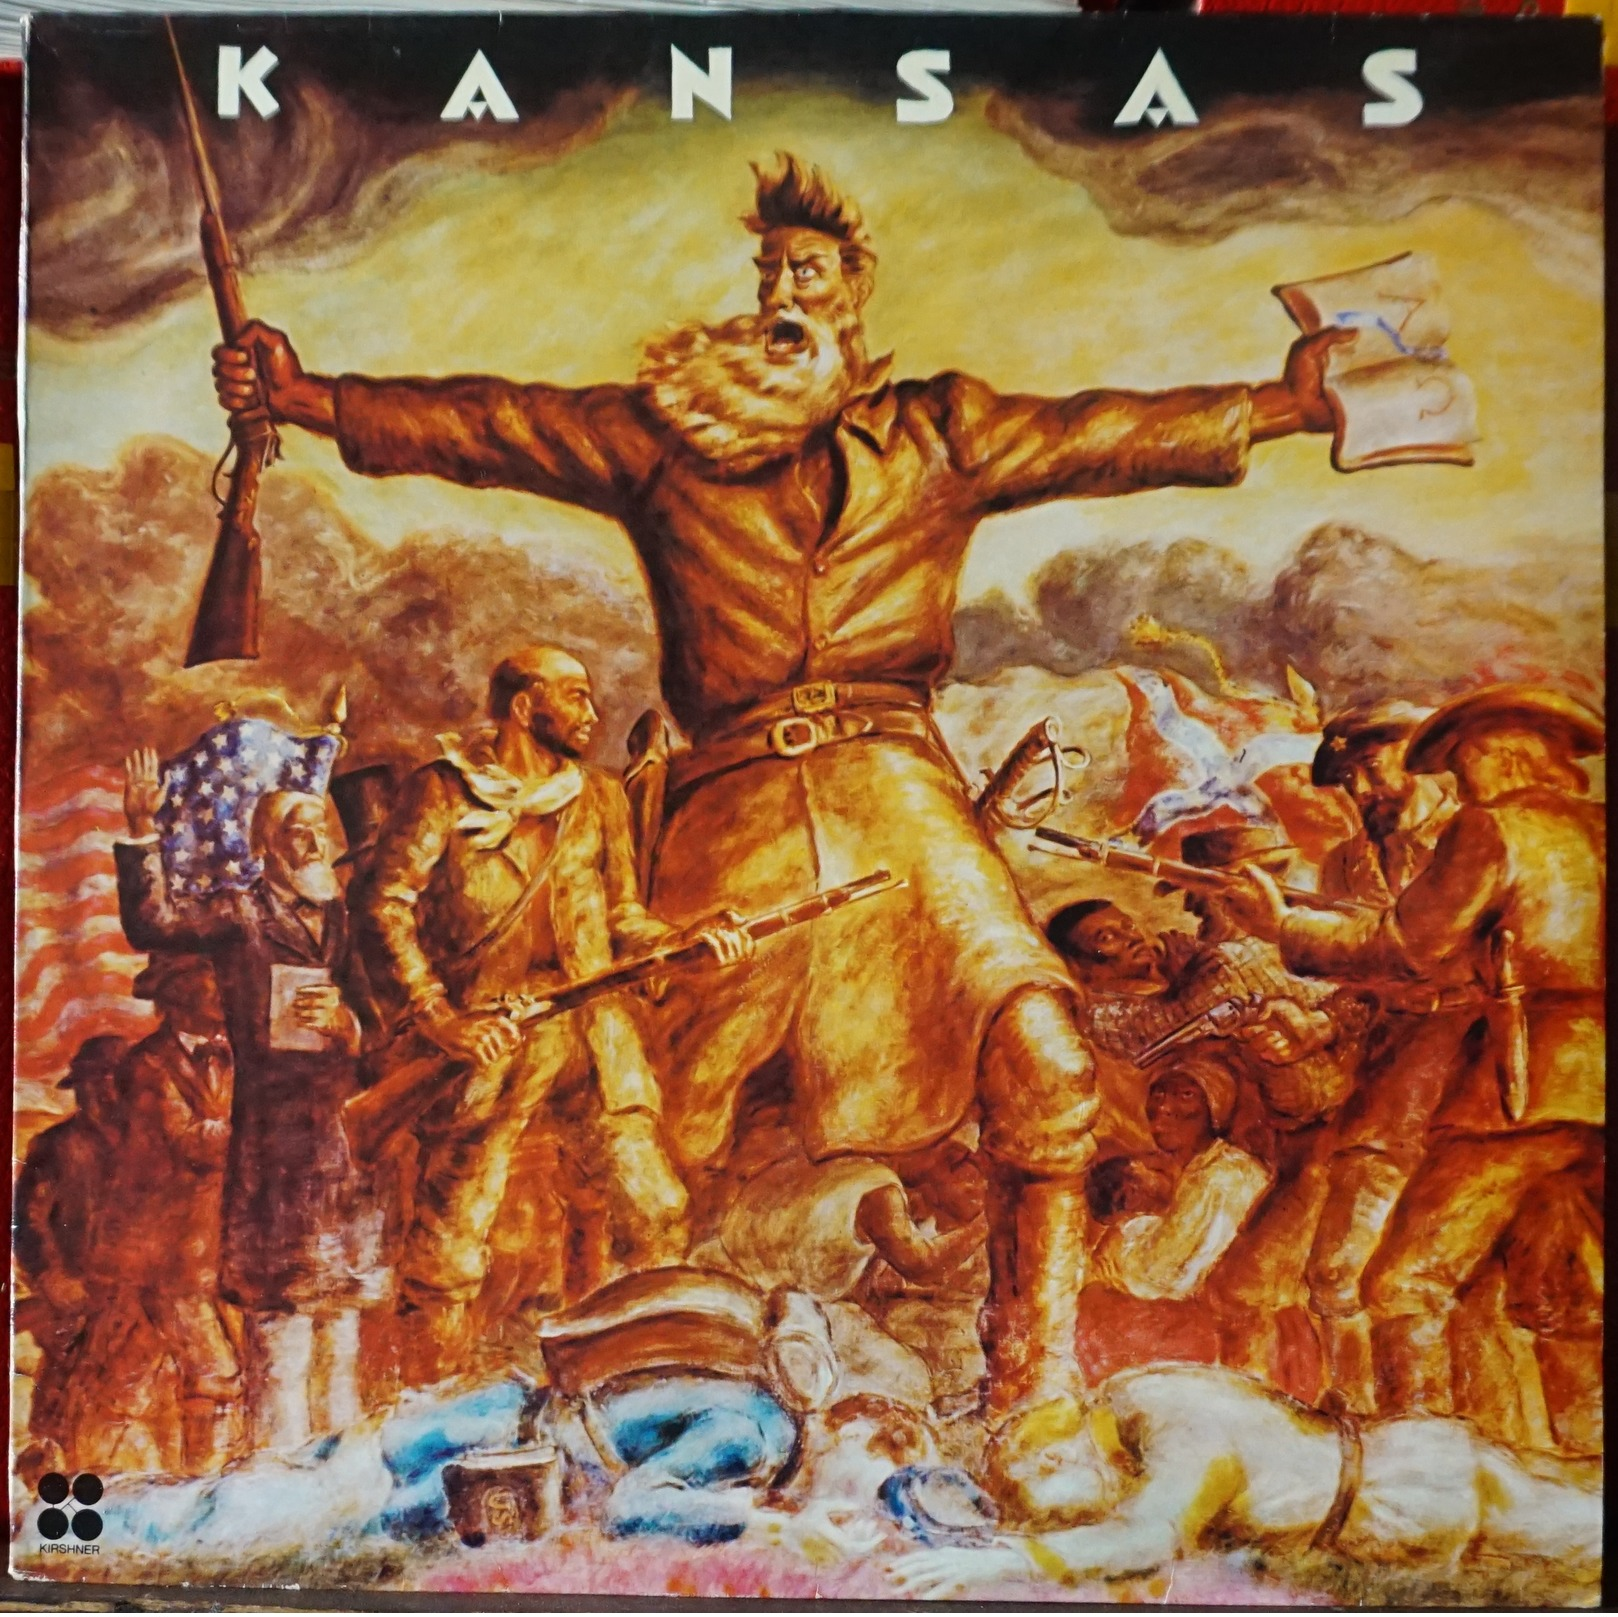 KANSAS - 33 LP KIR80174 - KANSAS  - 1978 - NM/NM - Rock